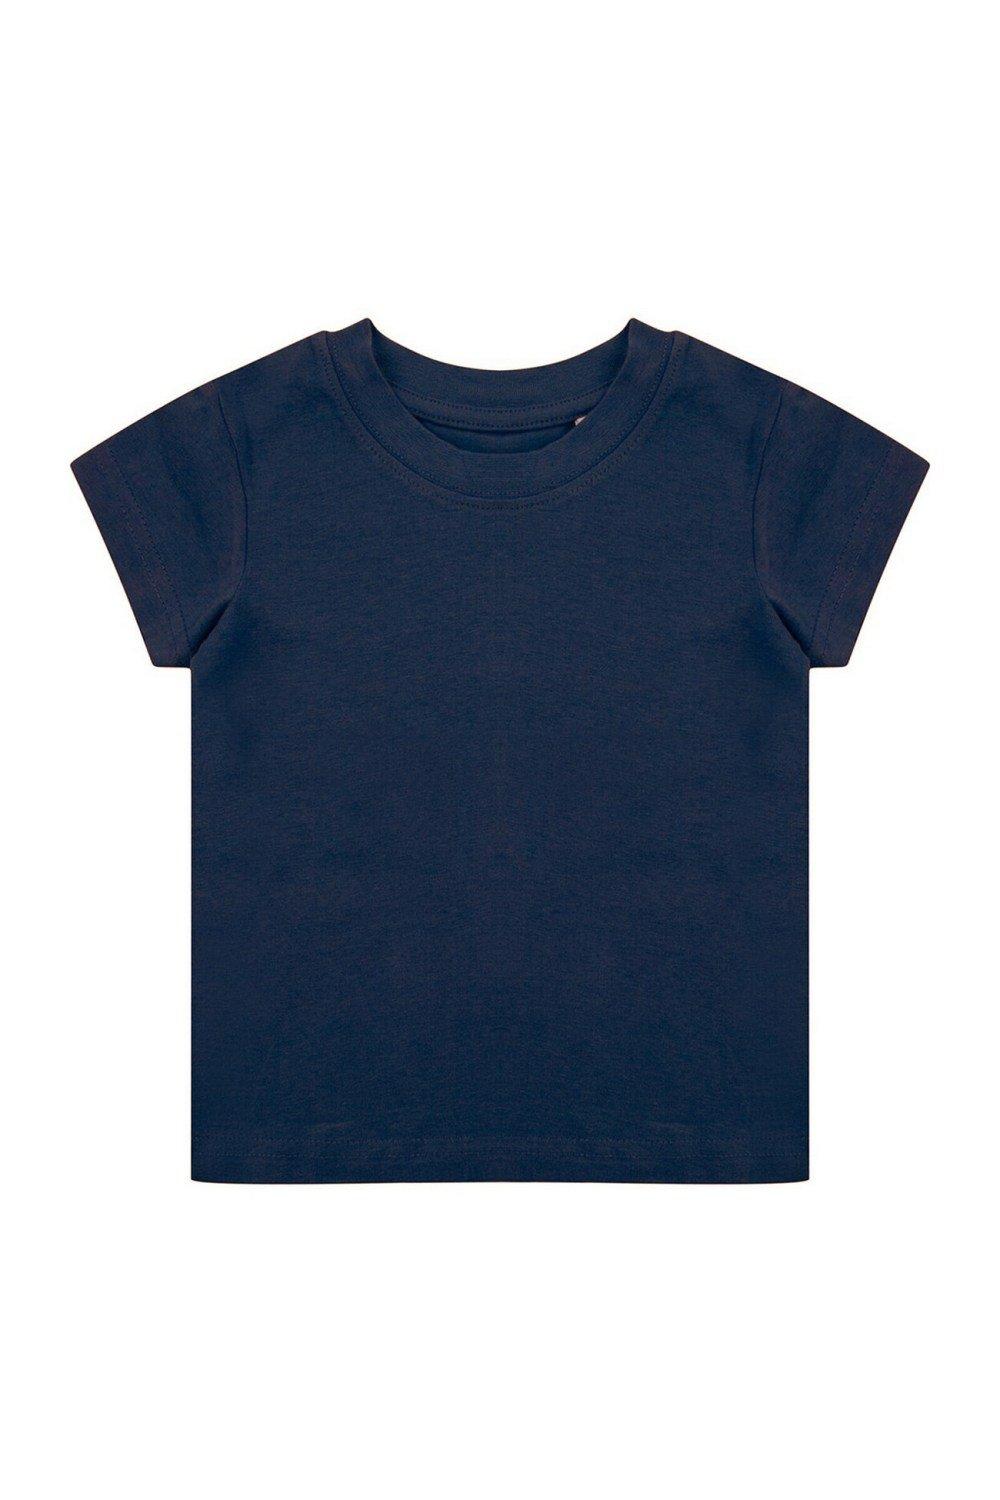 комплект одежды пижама для новорожденного 6 мес 62 68 см Органическая футболка Larkwood, темно-синий